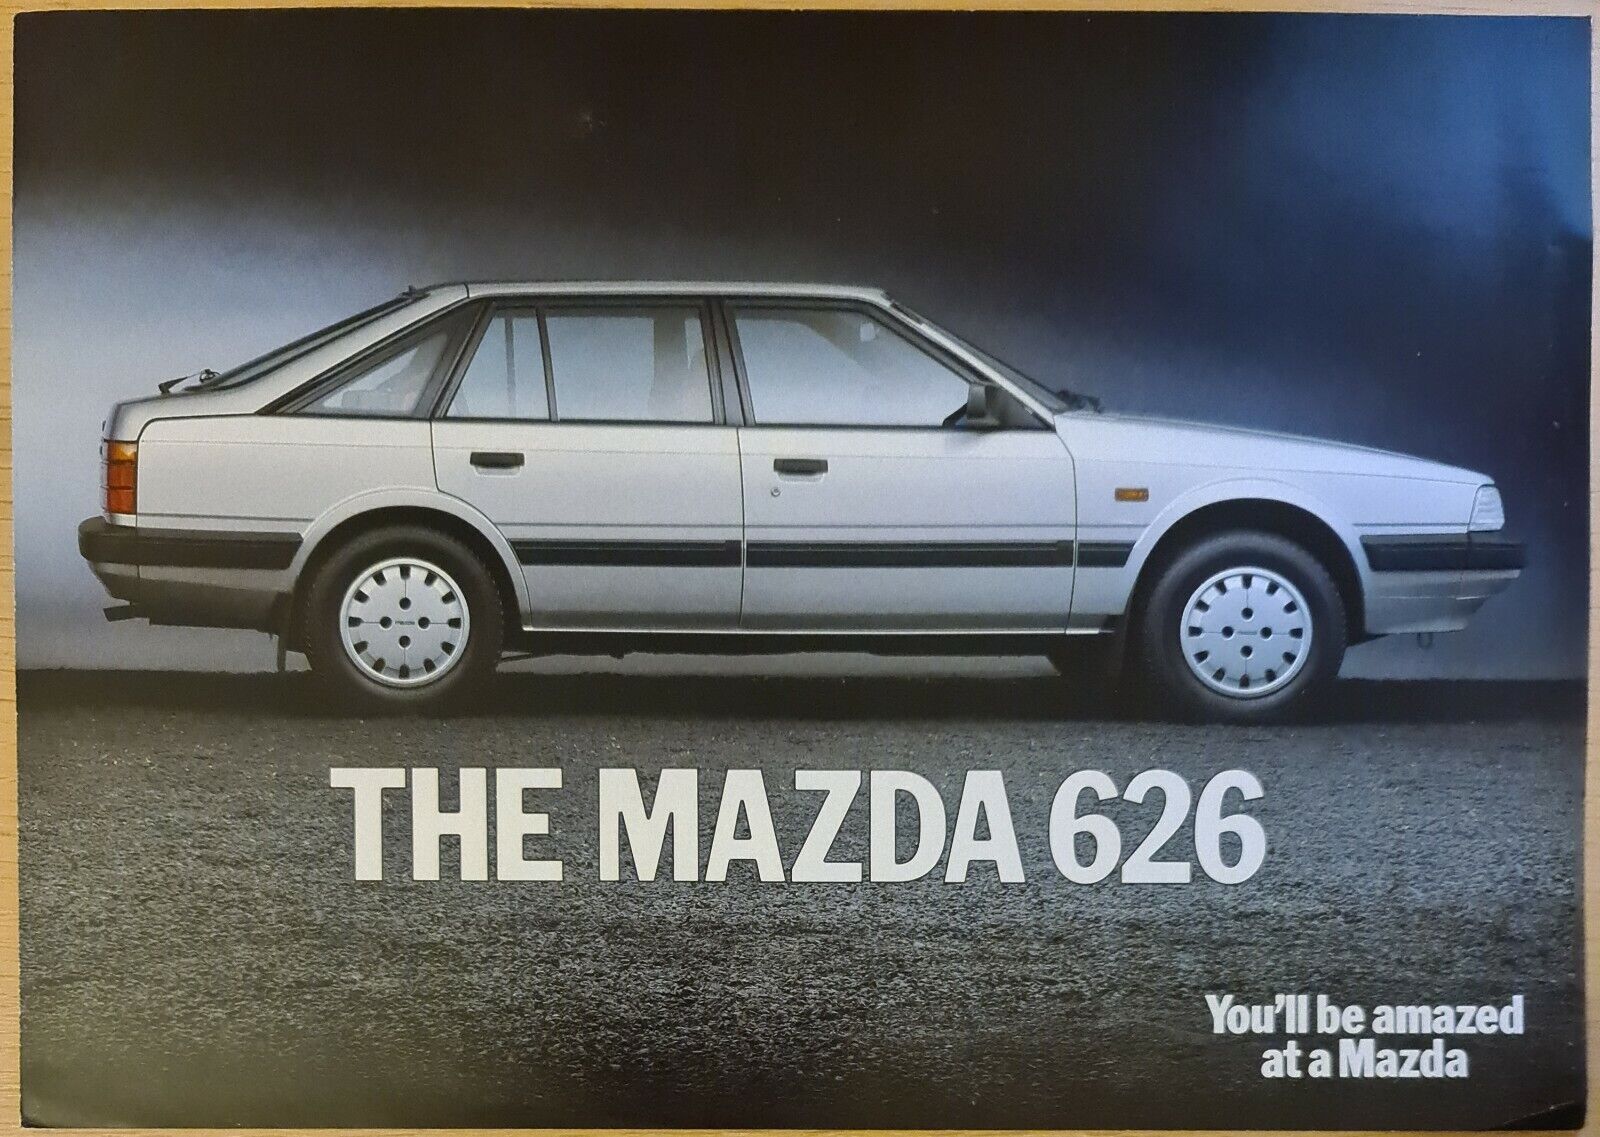 Mazda 626 4 Page Sales Brochure 85/86 | eBay